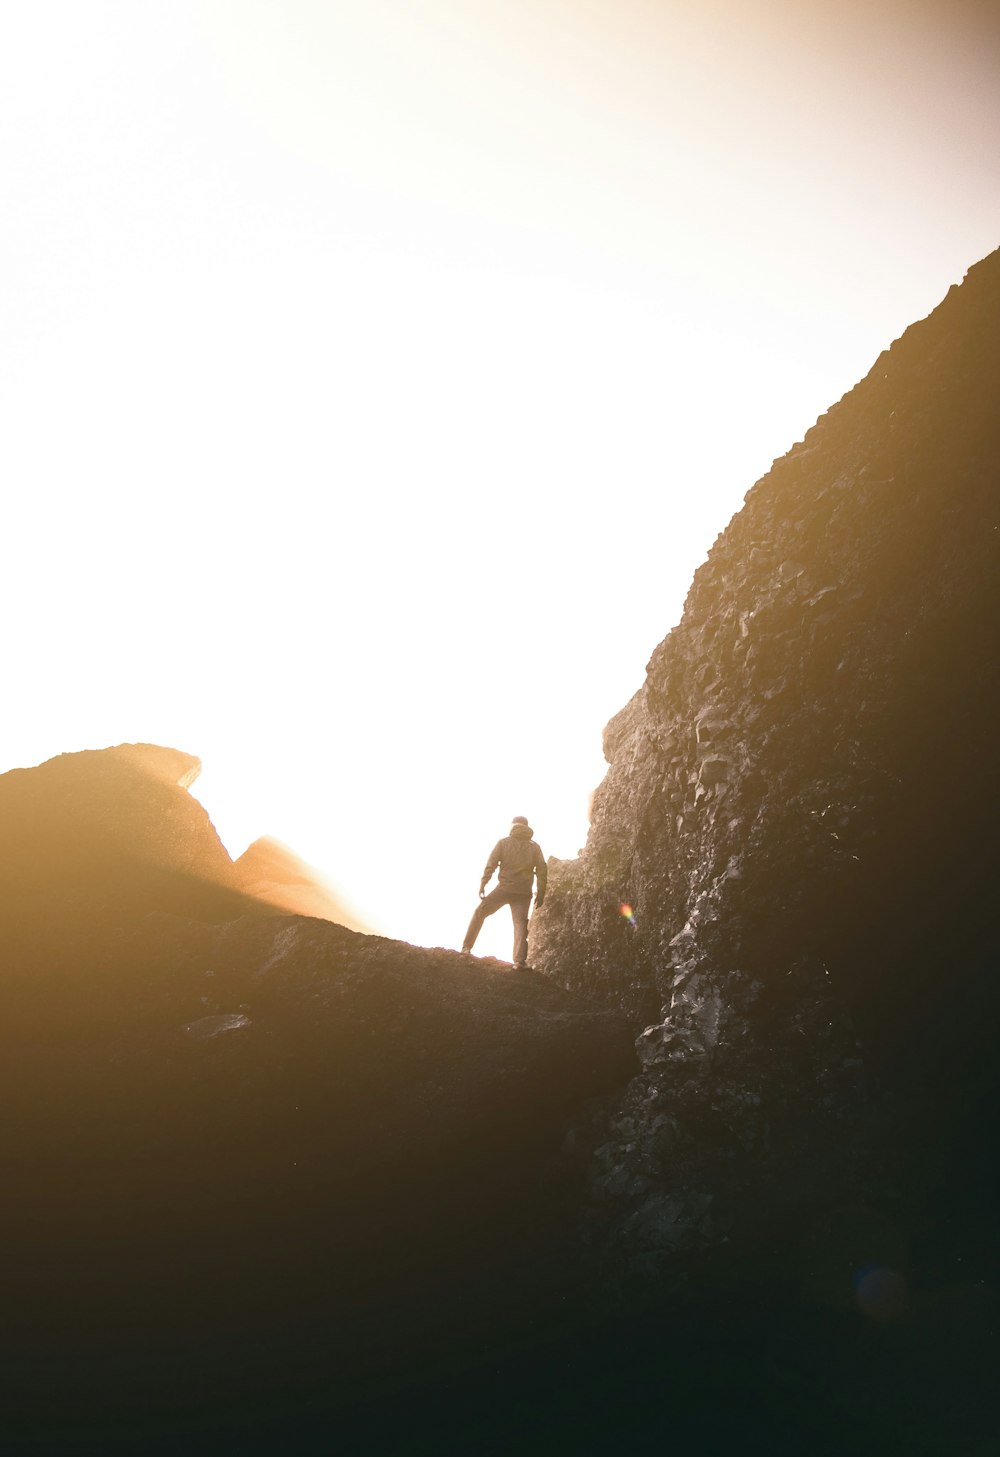 Fotografia da silhueta do homem em pé na montanha